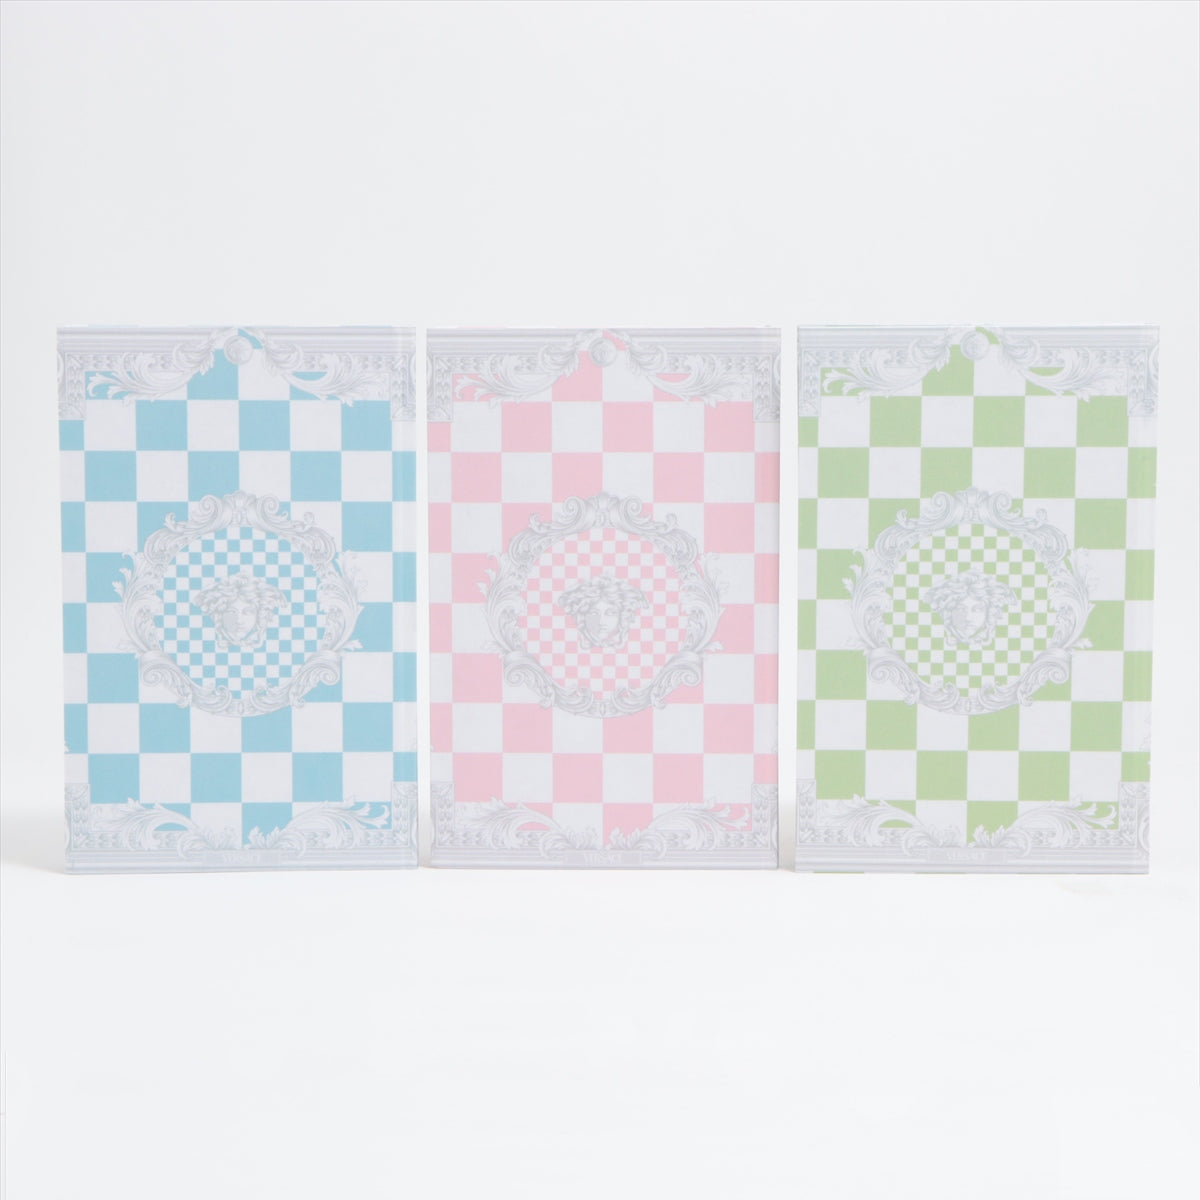 ヴェルサーチ メデューサ ノート ペーパー マルチカラー チェス柄 グリーン×ブルー×ピンク 無地 3冊セット